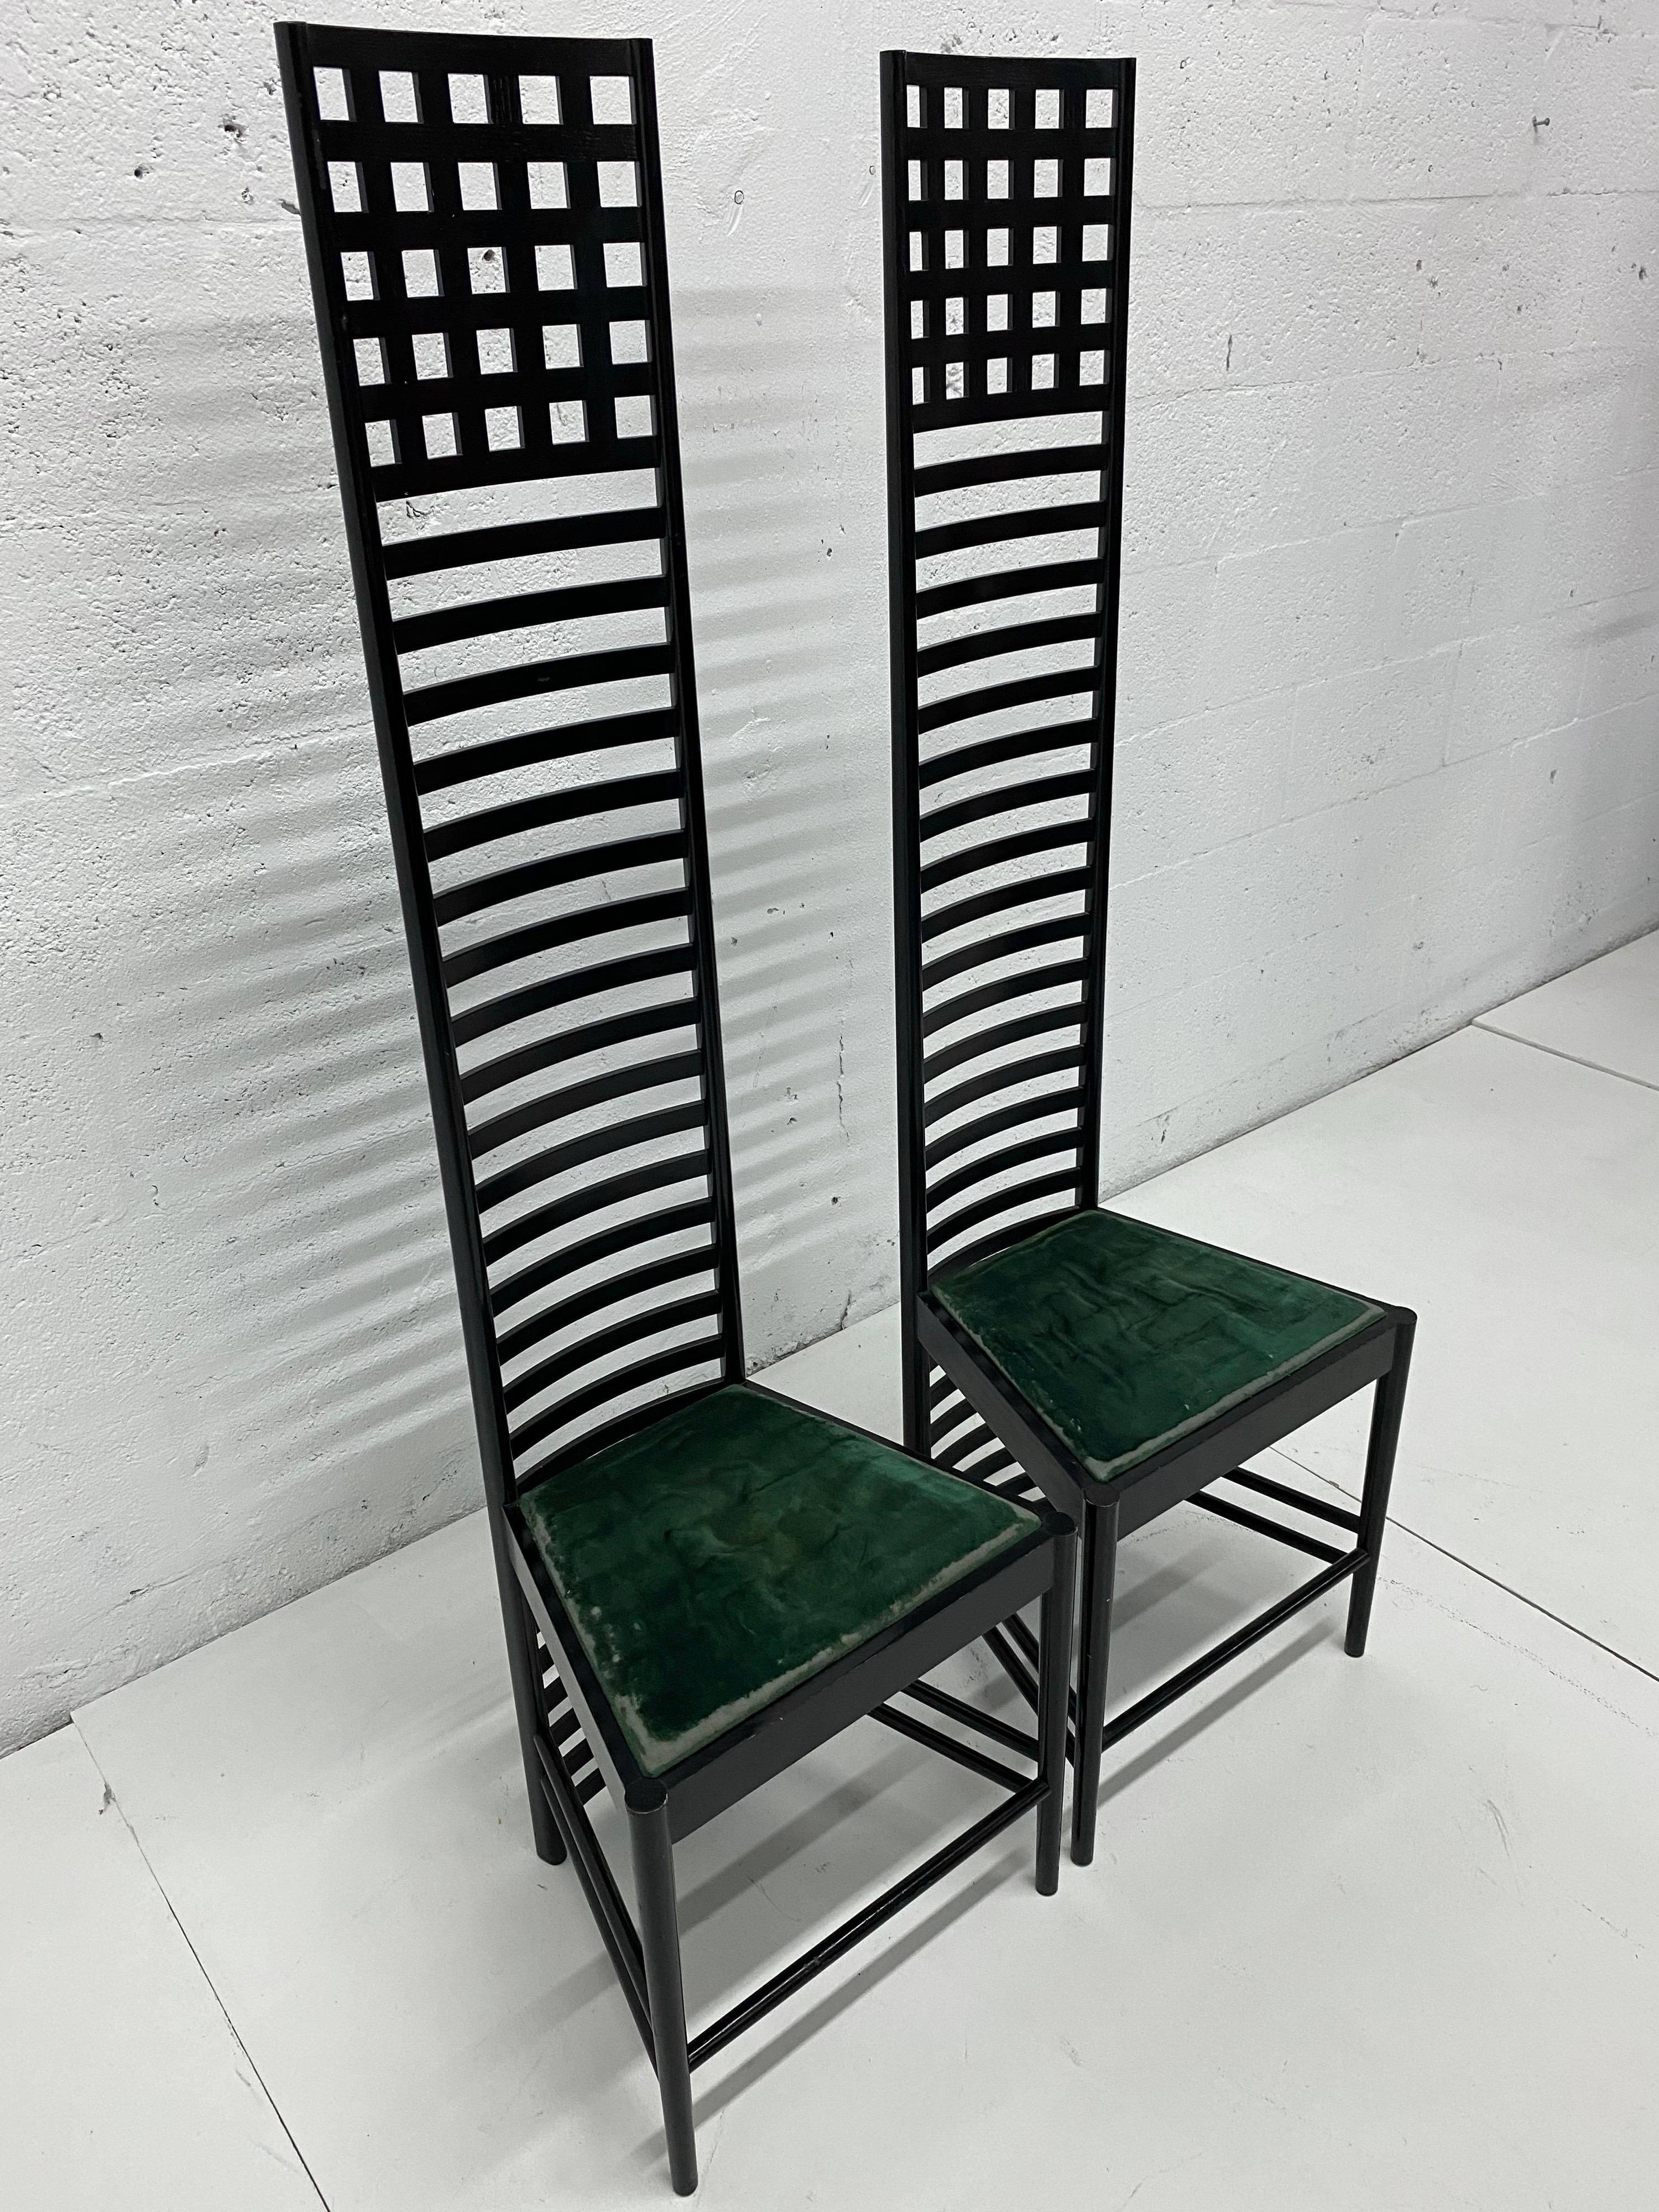 macintosh chairs for sale